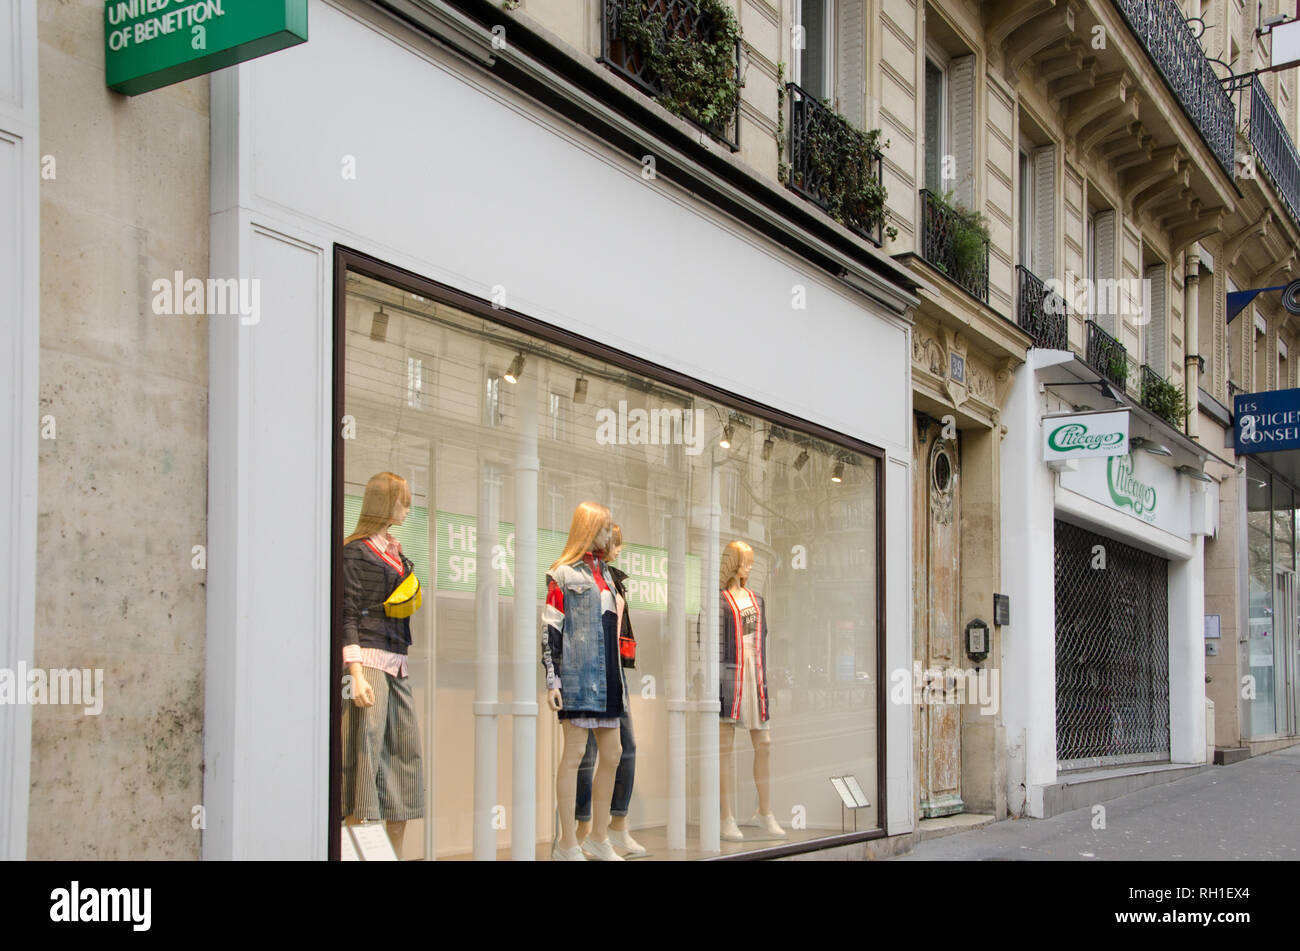 Colores unidos de Benetton windows tienda en el Boulevard Saint-Michel.  París, 28 de enero de 2019 Fotografía de stock - Alamy